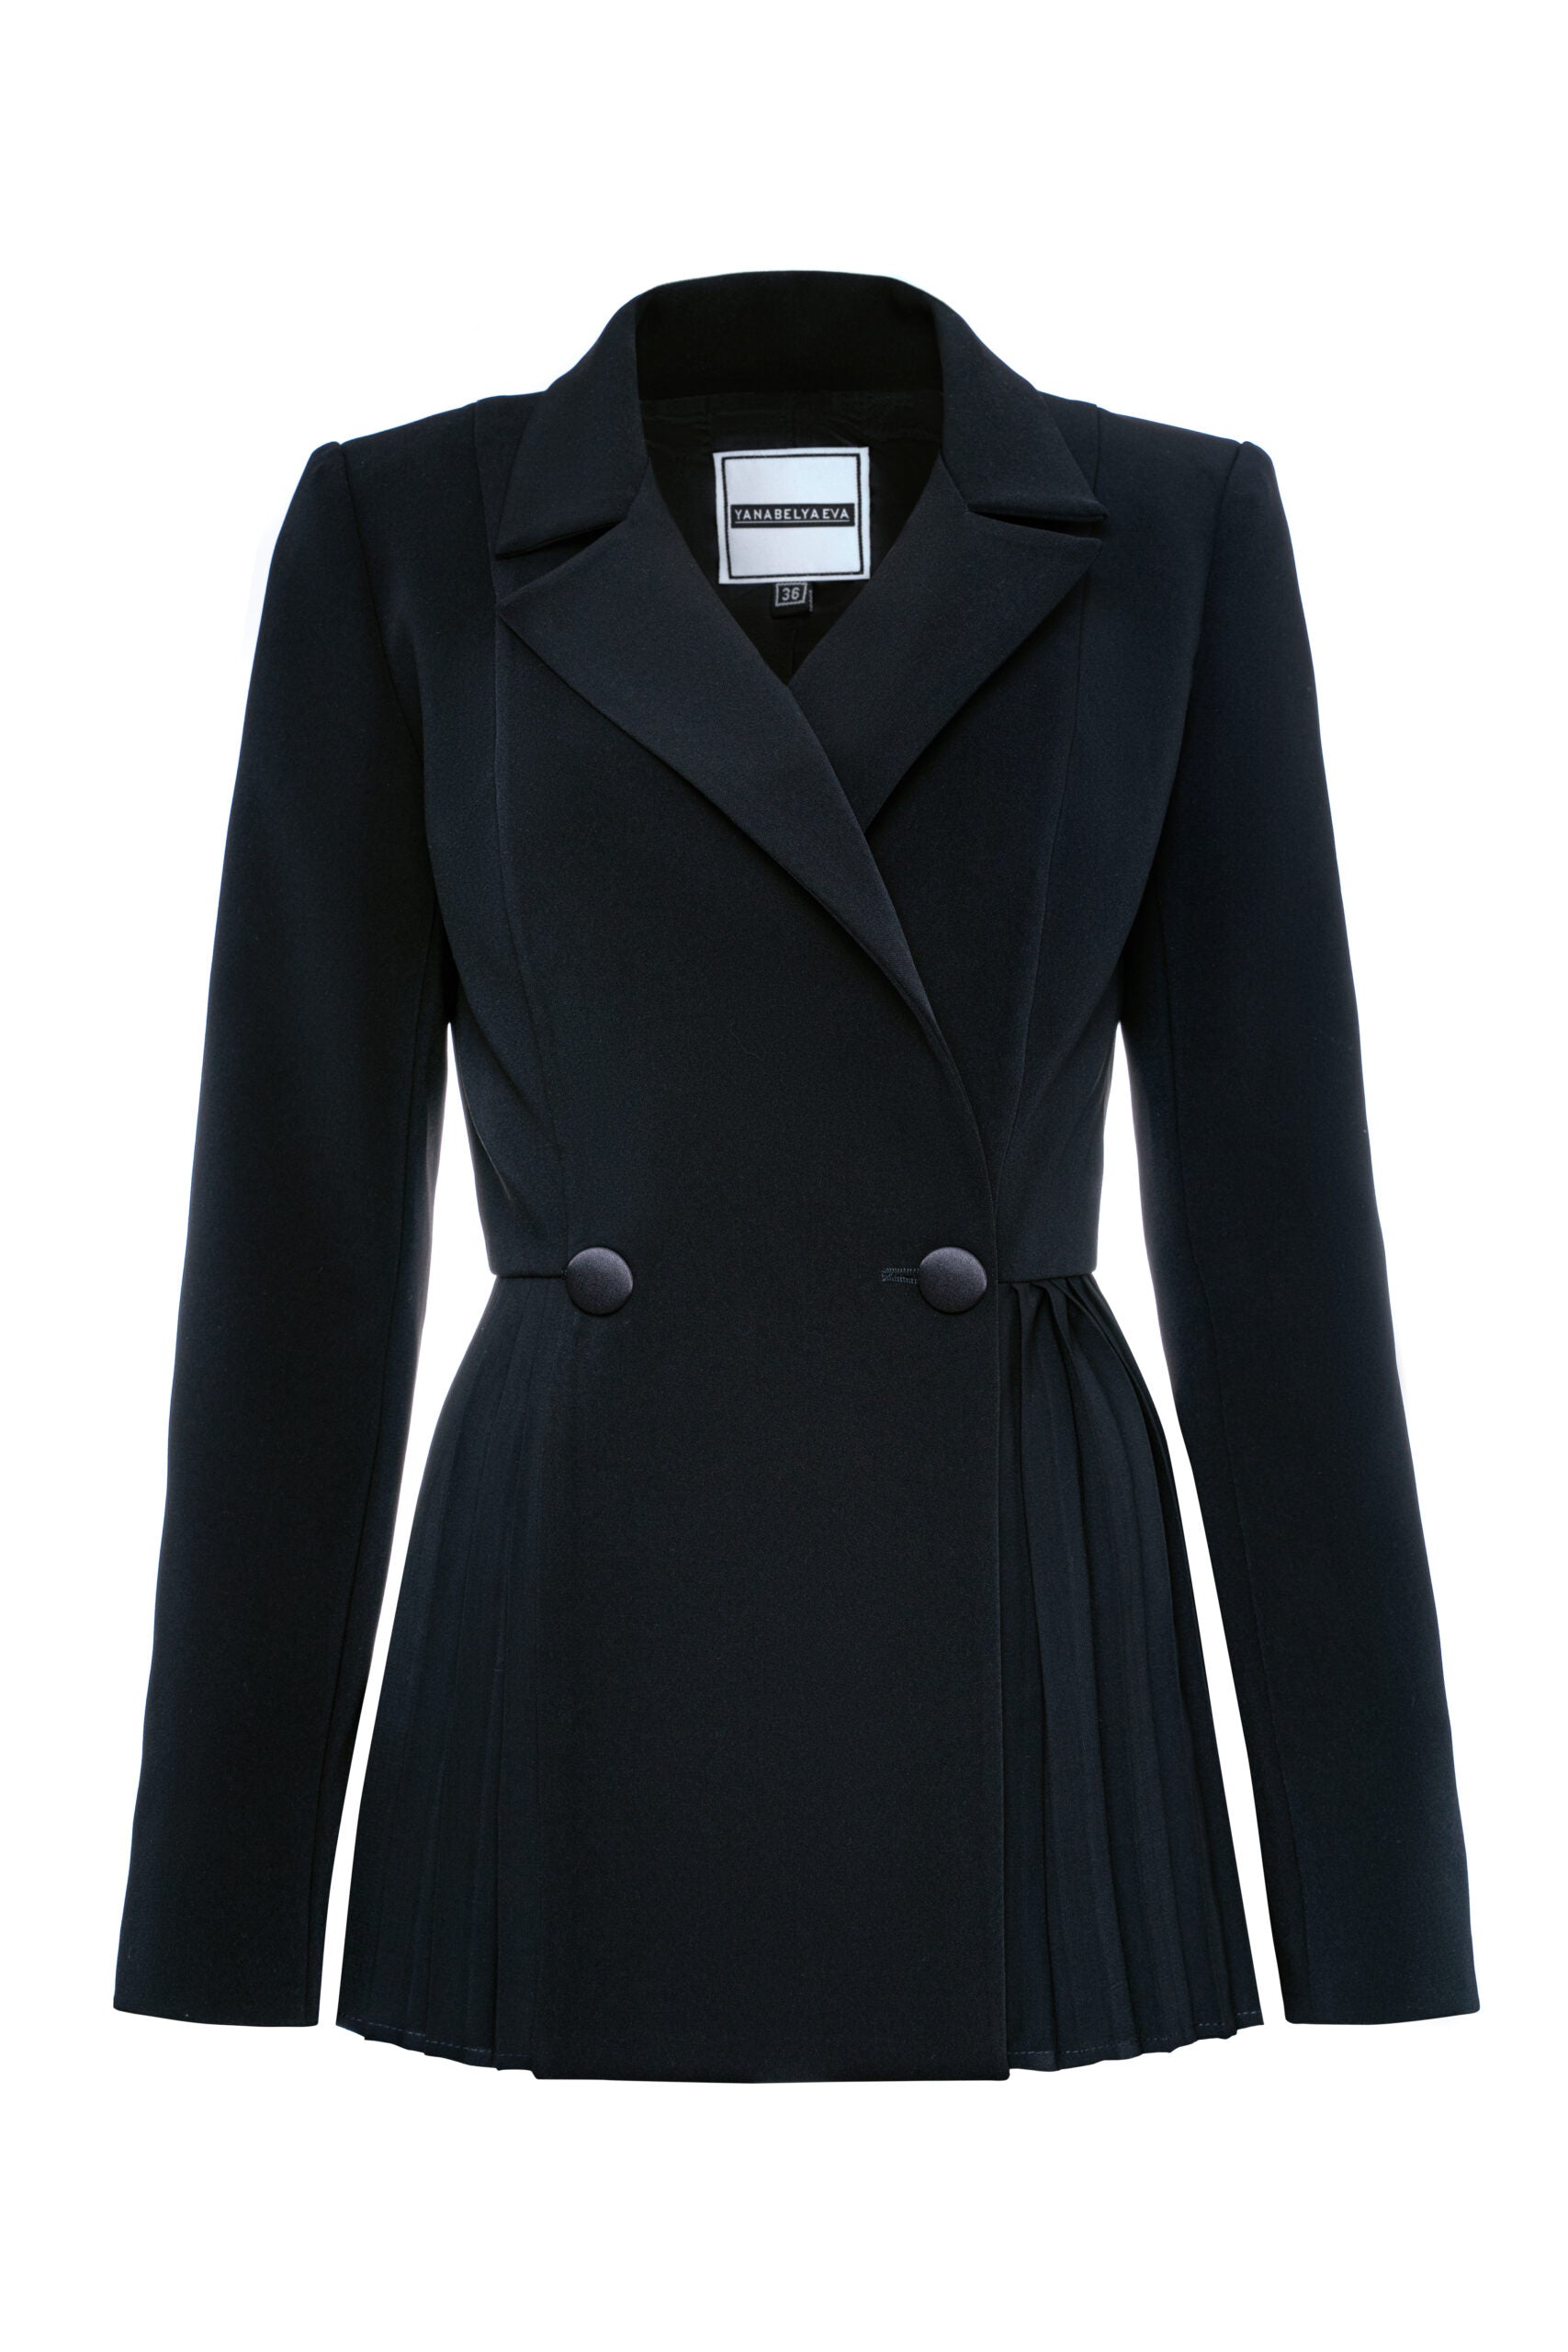 Dominika's black pleated jacket